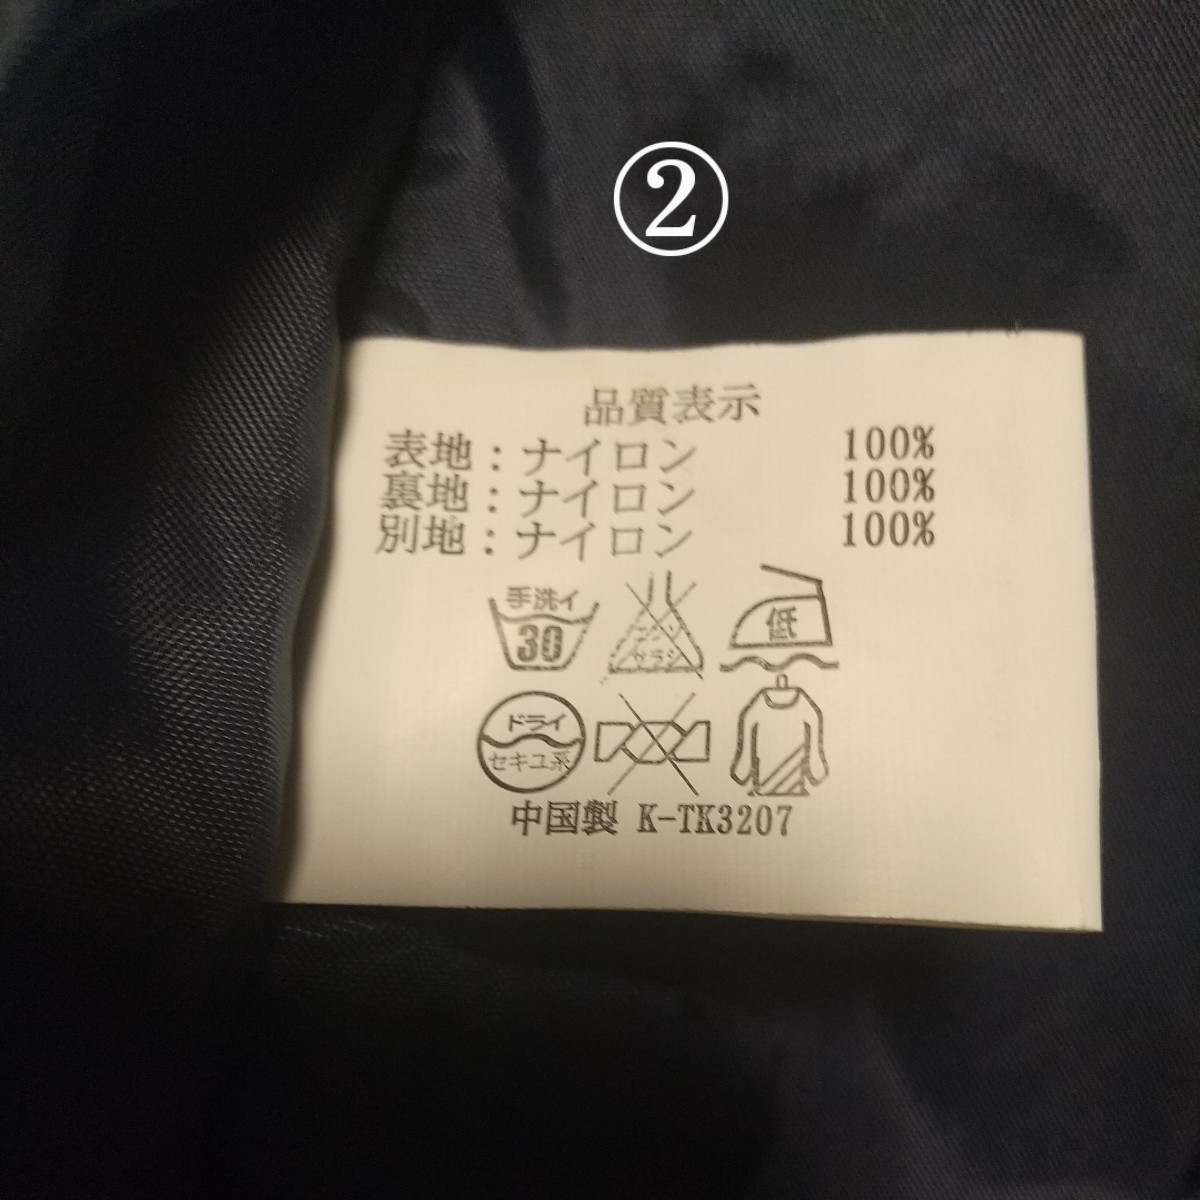 [ защищающий от холода не использовался комплект ] Michelin джемпер [M] блузон жакет Bridgestone Dunlop Yokohama Toyo высшее . viva n dam 